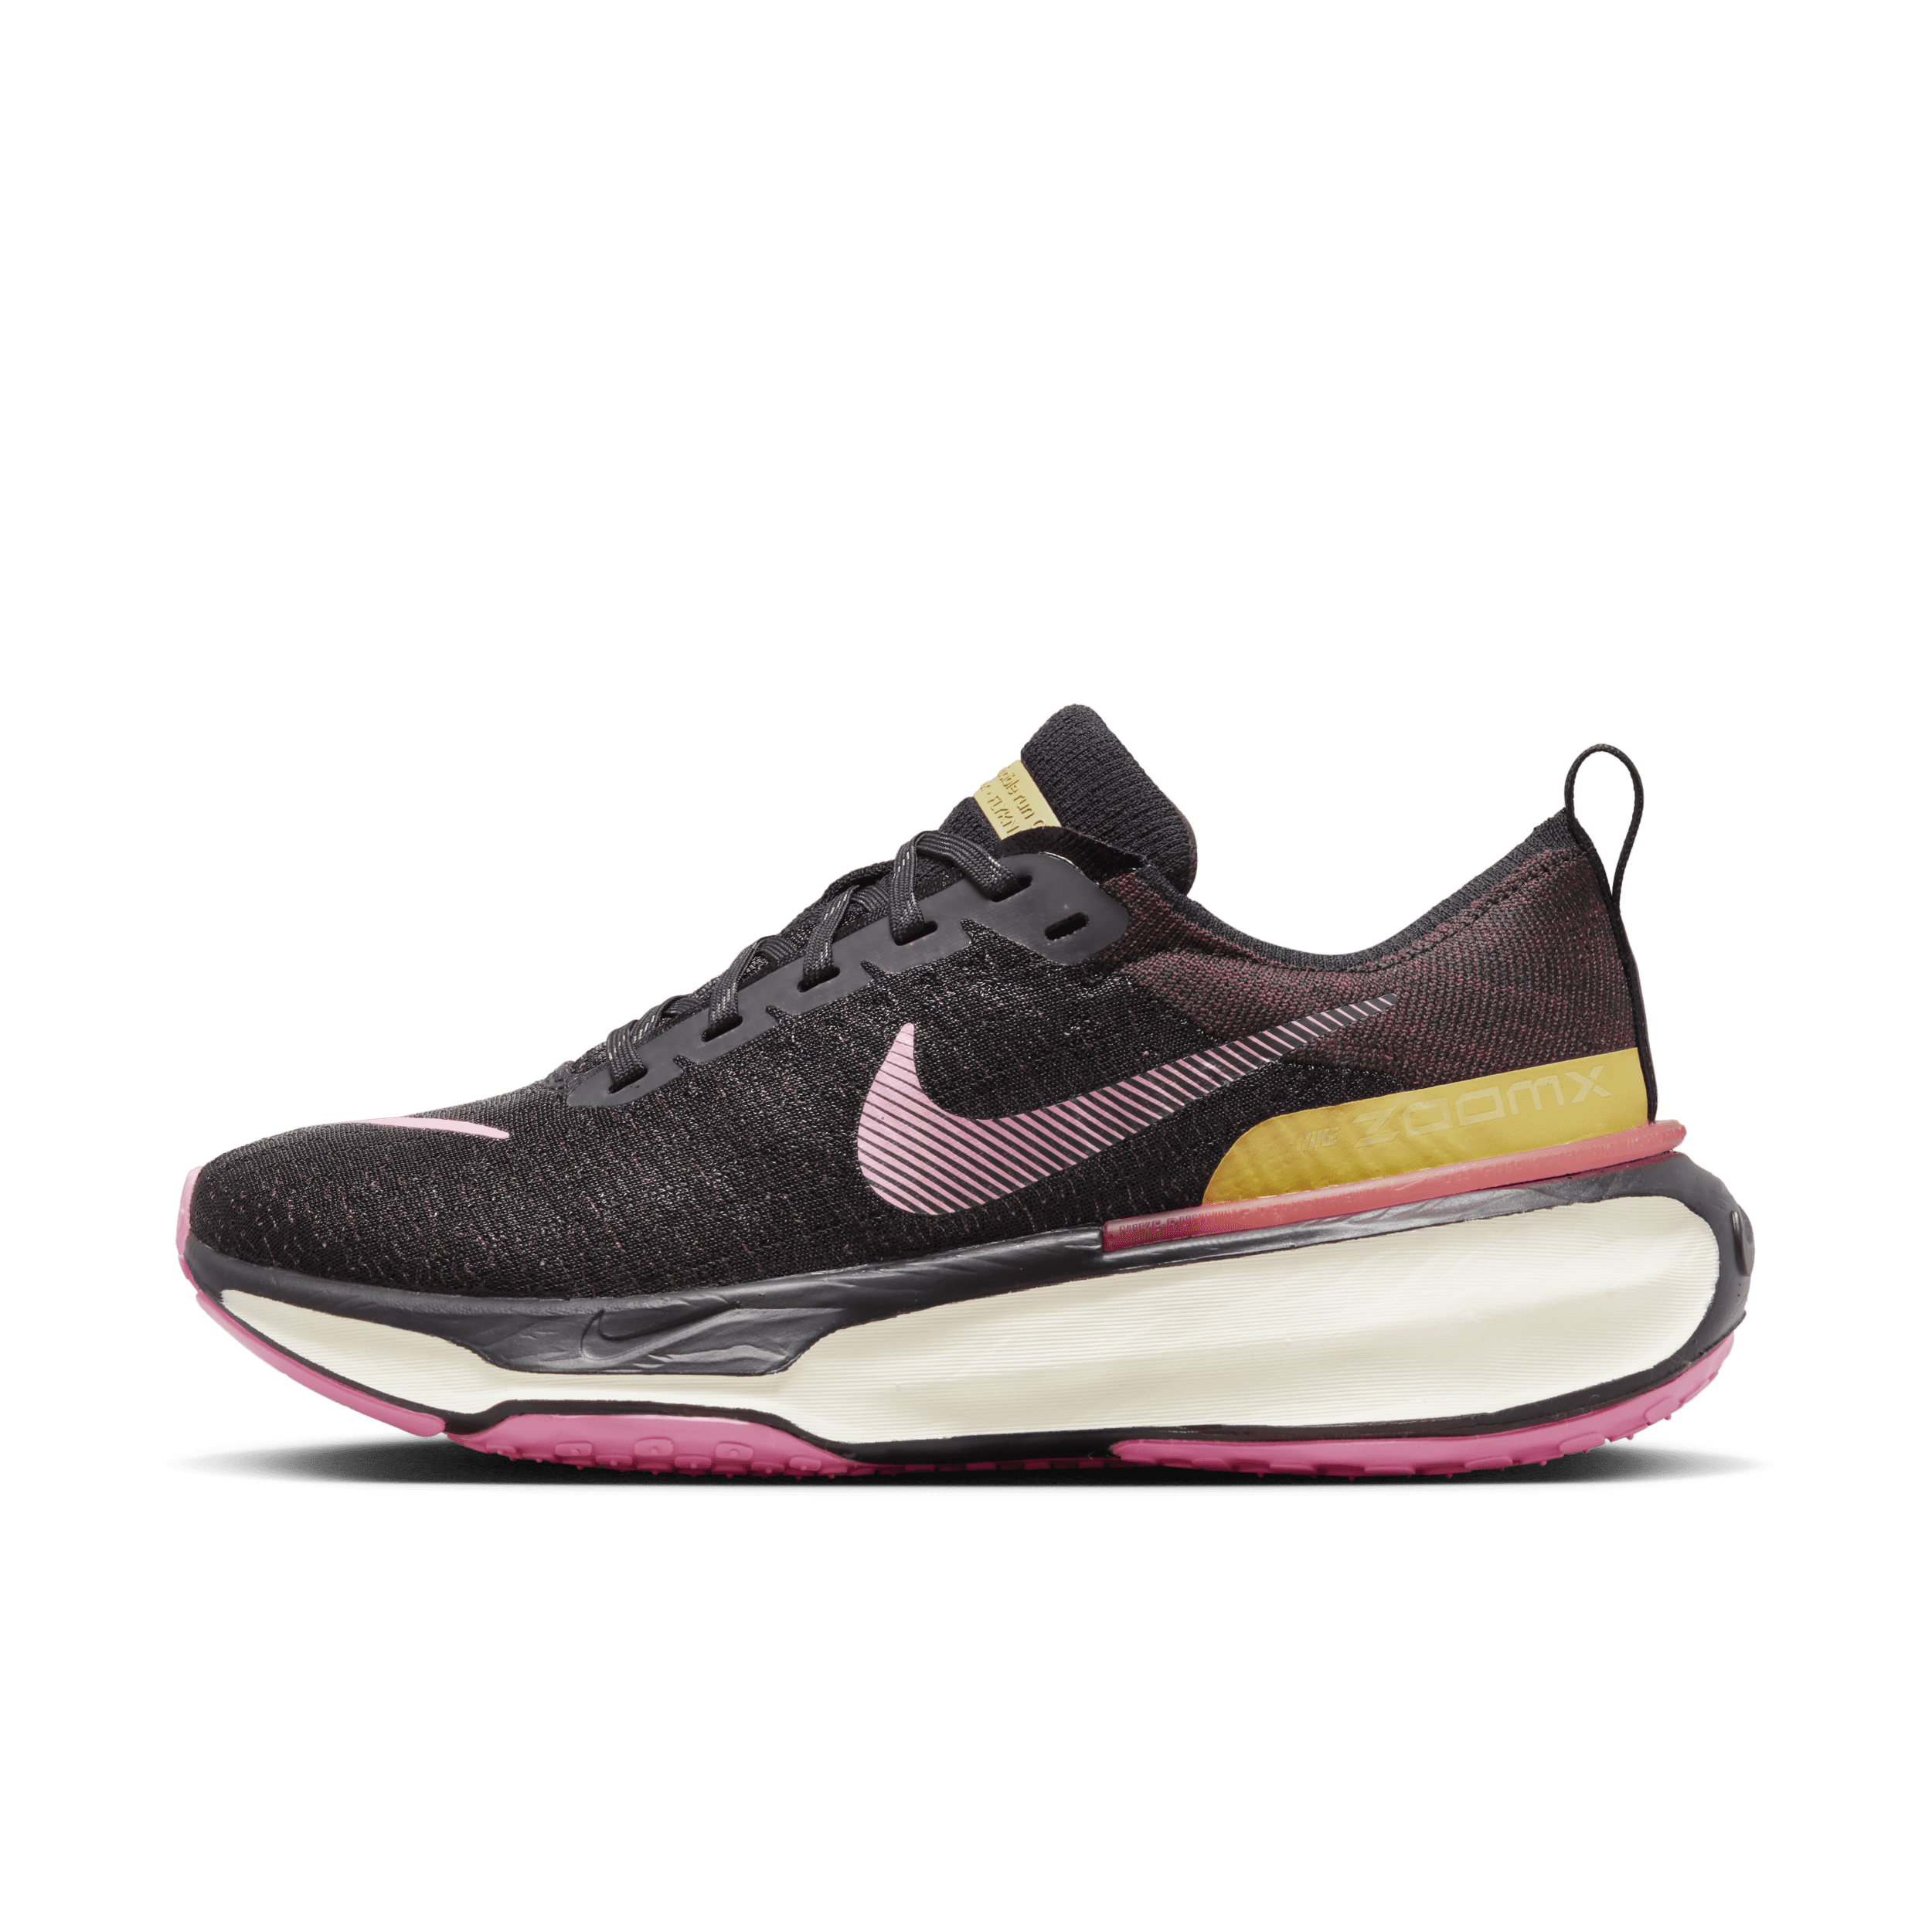 Nike Invincible 3 Zapatillas de running para asfalto - Mujer - Marrón